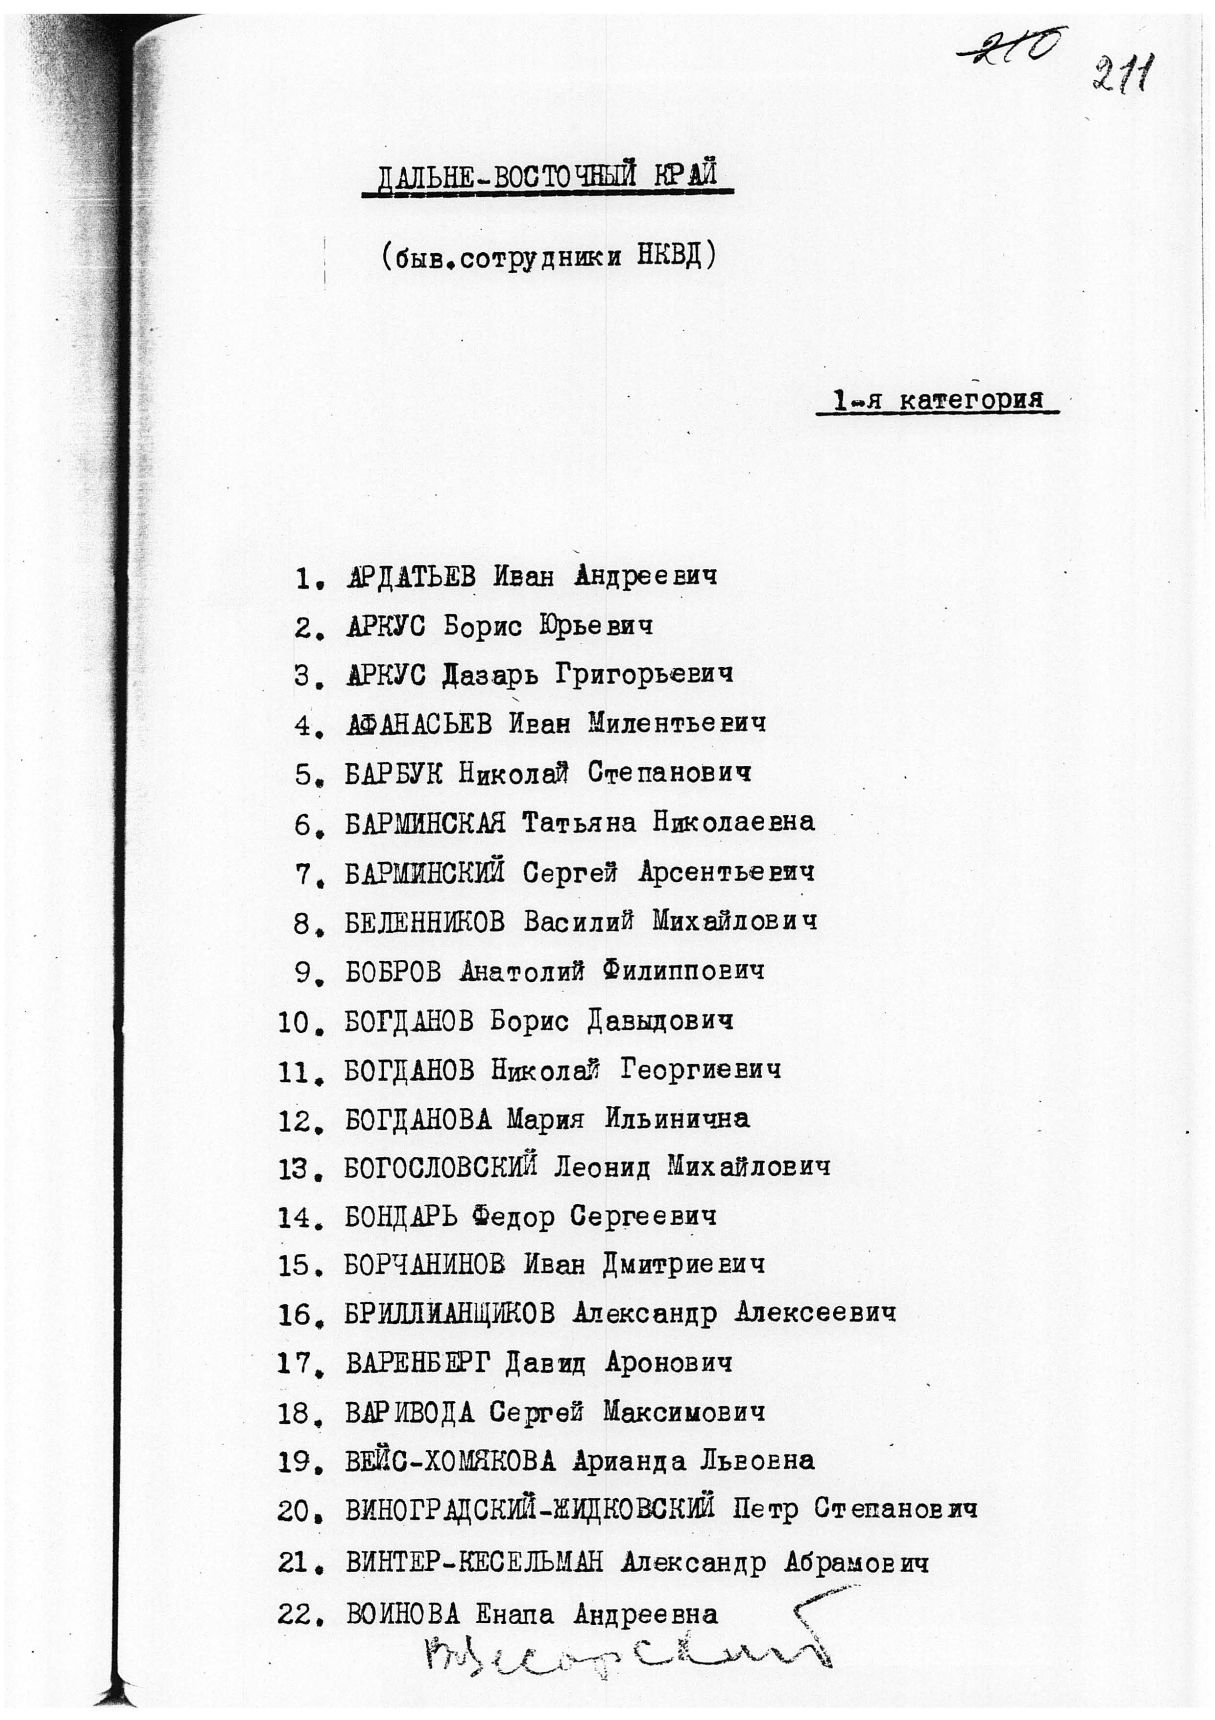 Сталинский расстрельный список в ОП от 3.2.1938 г. (Хабаровск)